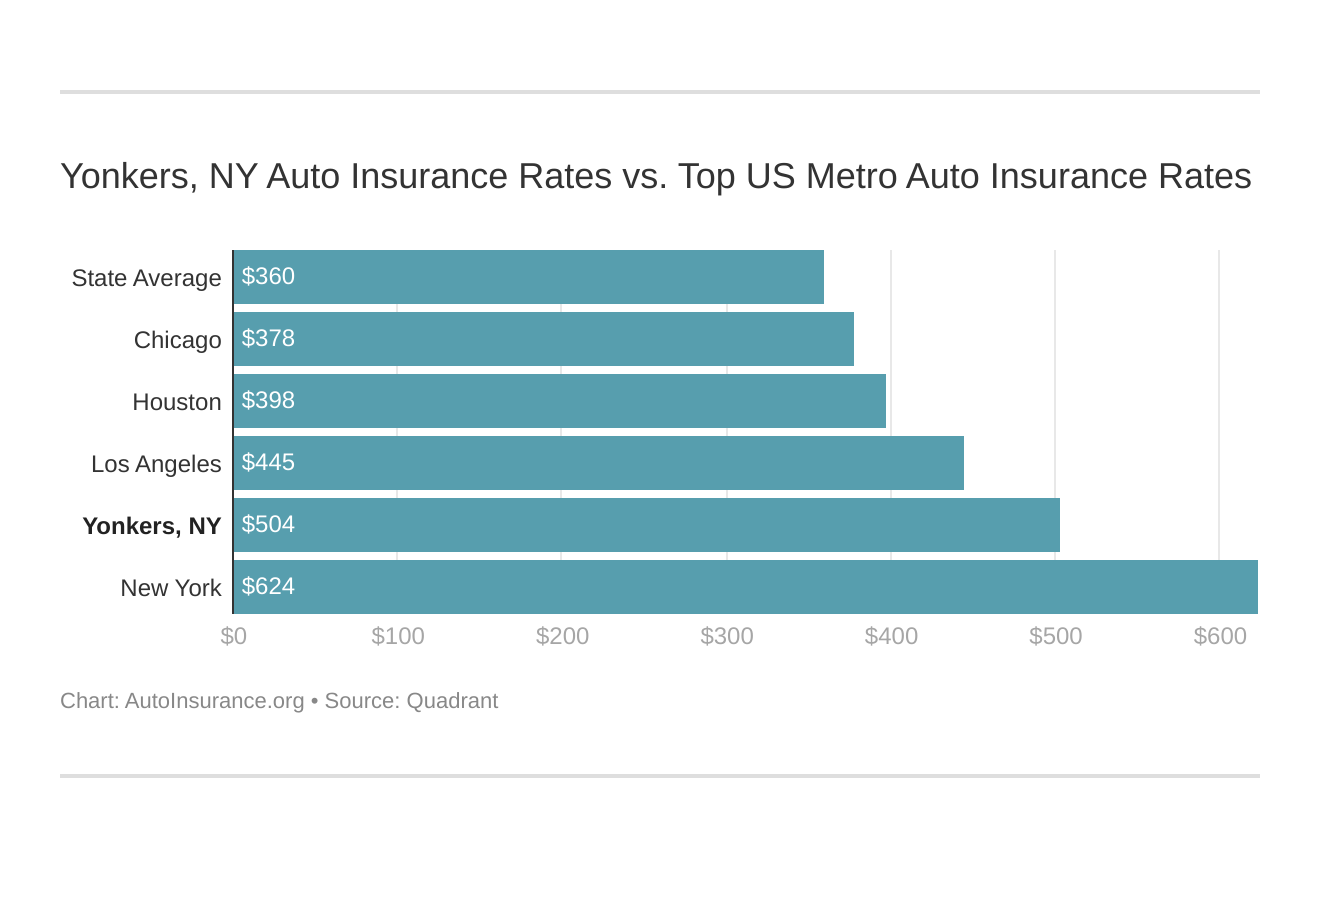 Yonkers, NY Auto Insurance Rates vs. Top US Metro Auto Insurance Rates